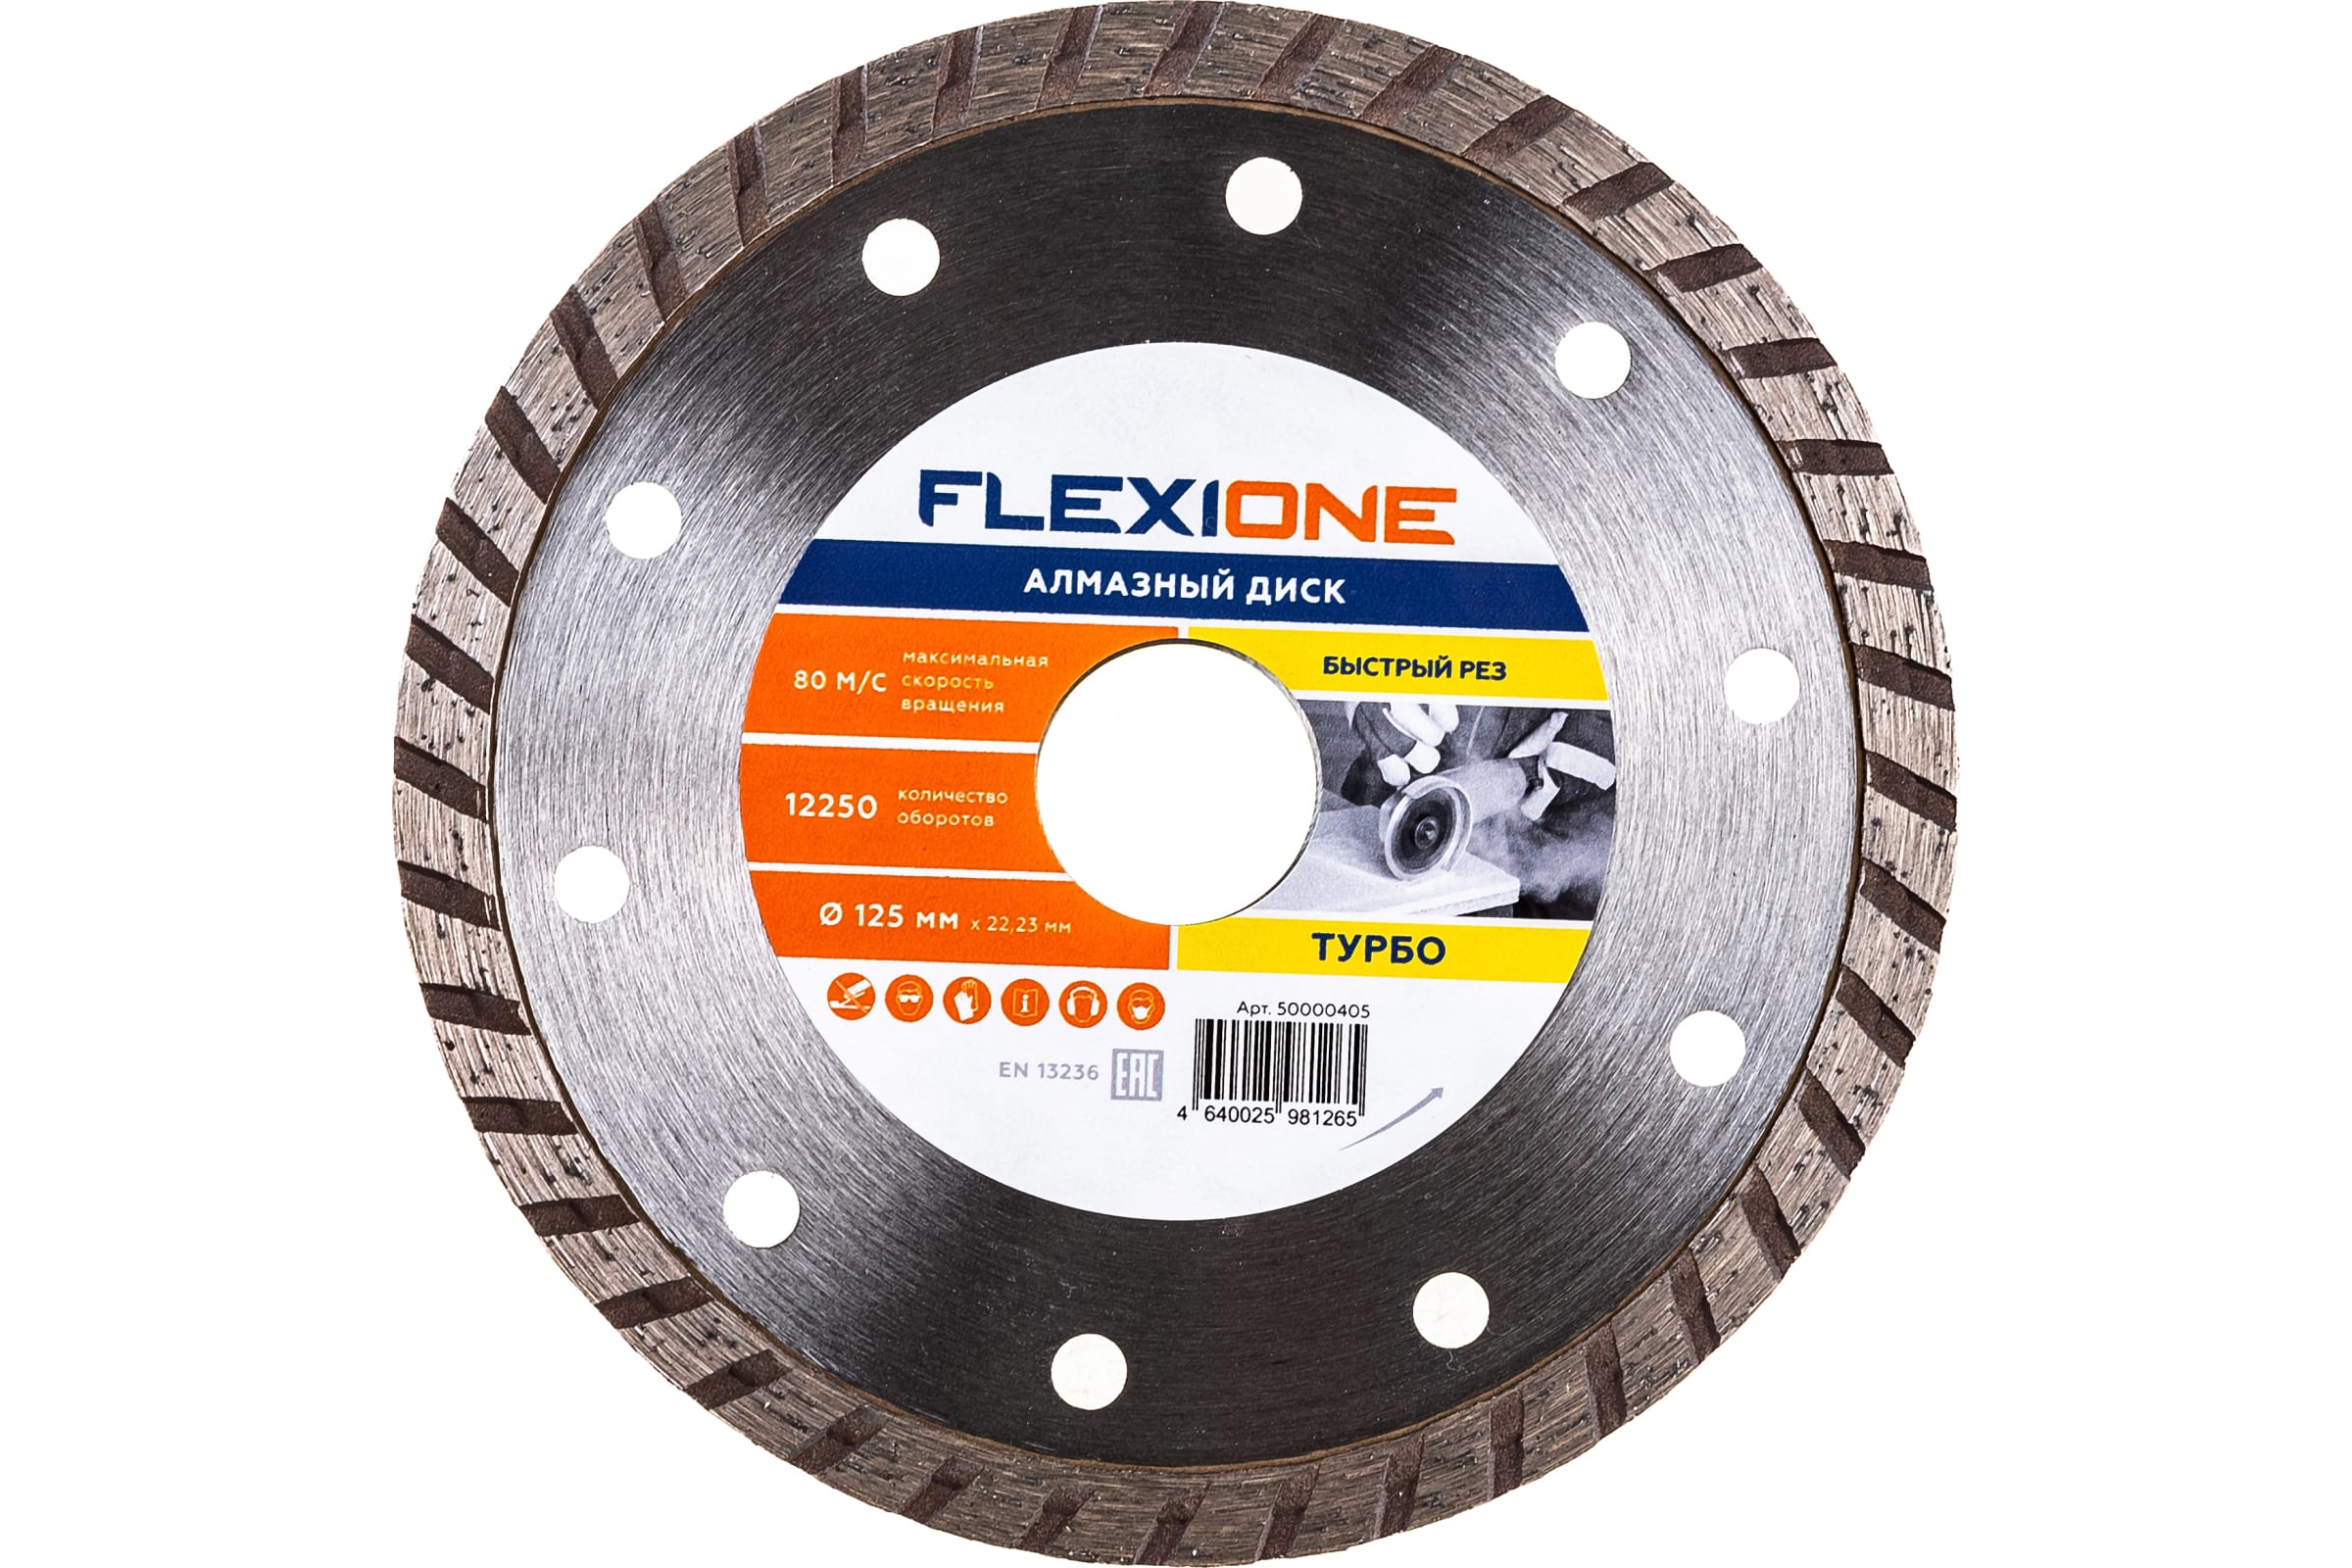 Flexione Алмазный диск с турбированной кромкой 125х22.2 Общестроит.Материалы Fl 50000405